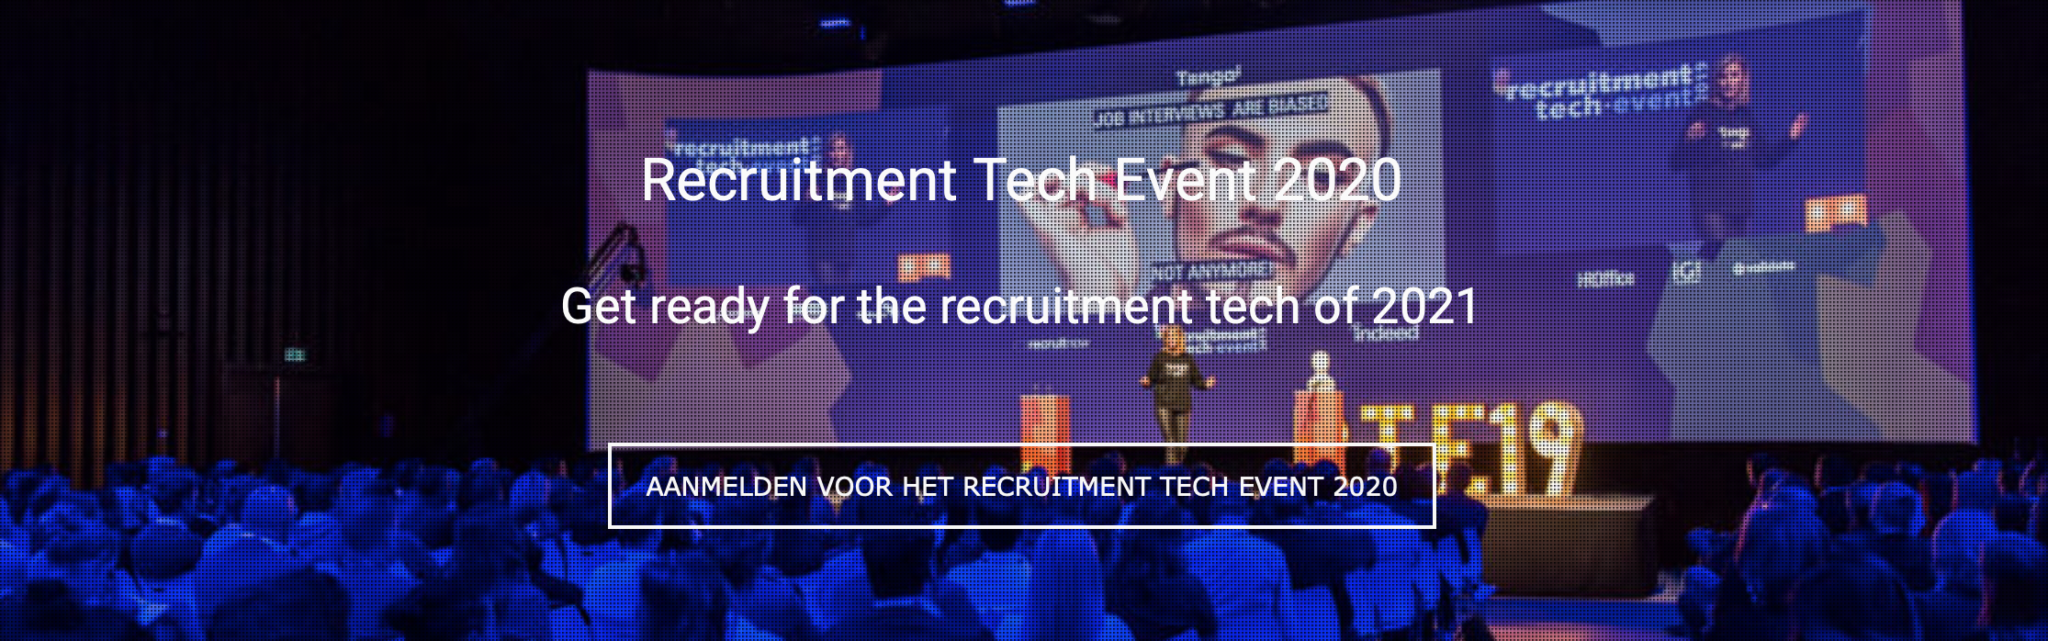 Janne Vereijken keynote speaker Recruitment Tech Event